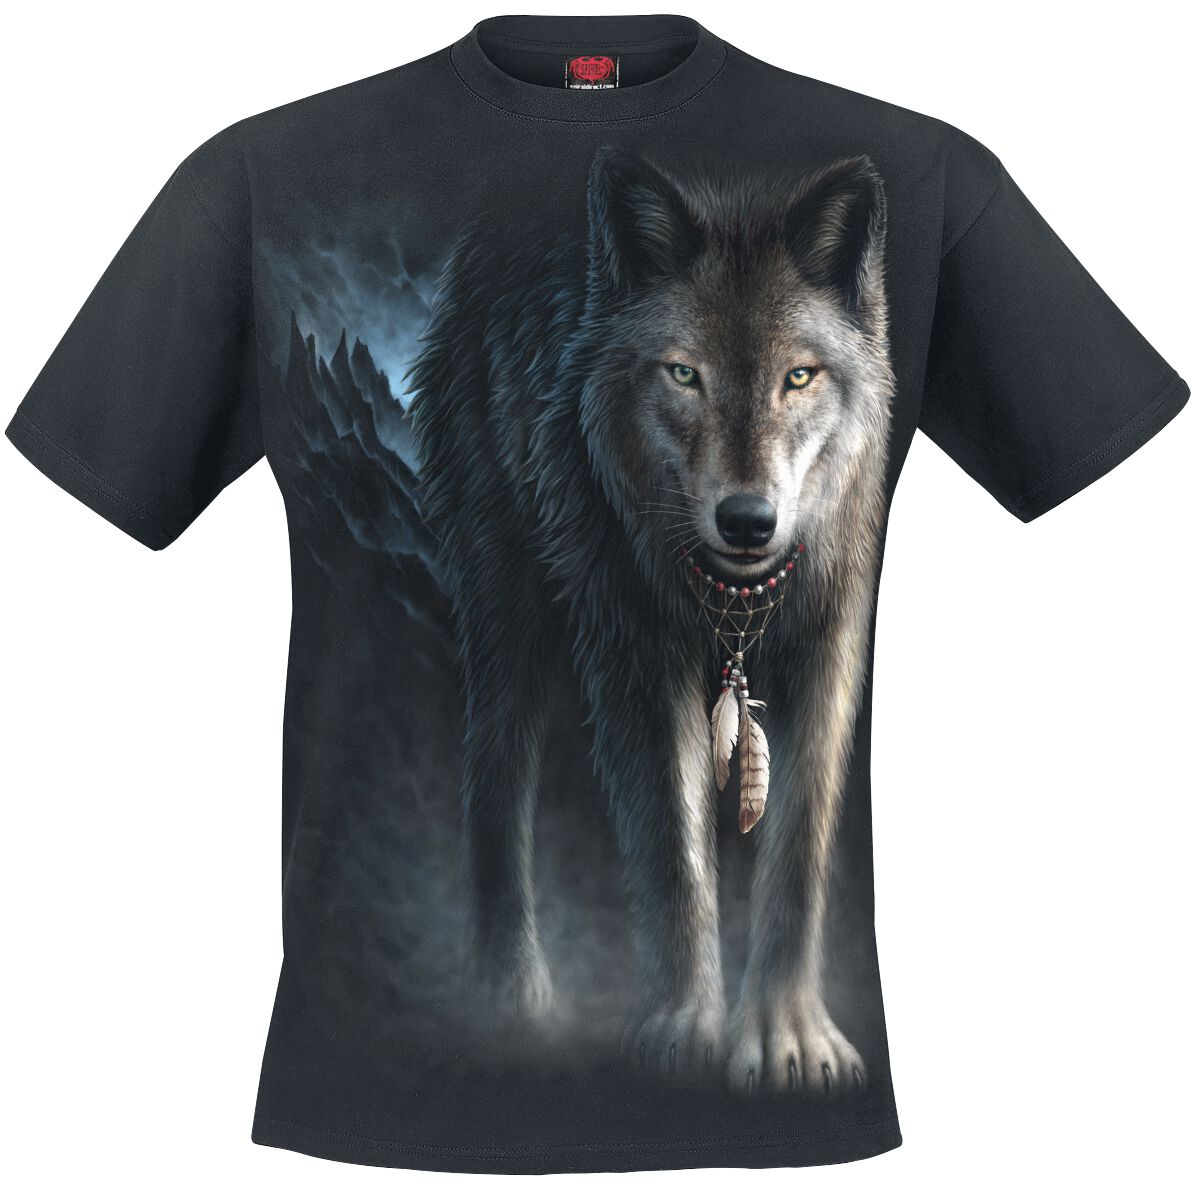 Spiral - Gothic T-Shirt - From Darkness - S bis 4XL - für Männer - Größe M - schwarz